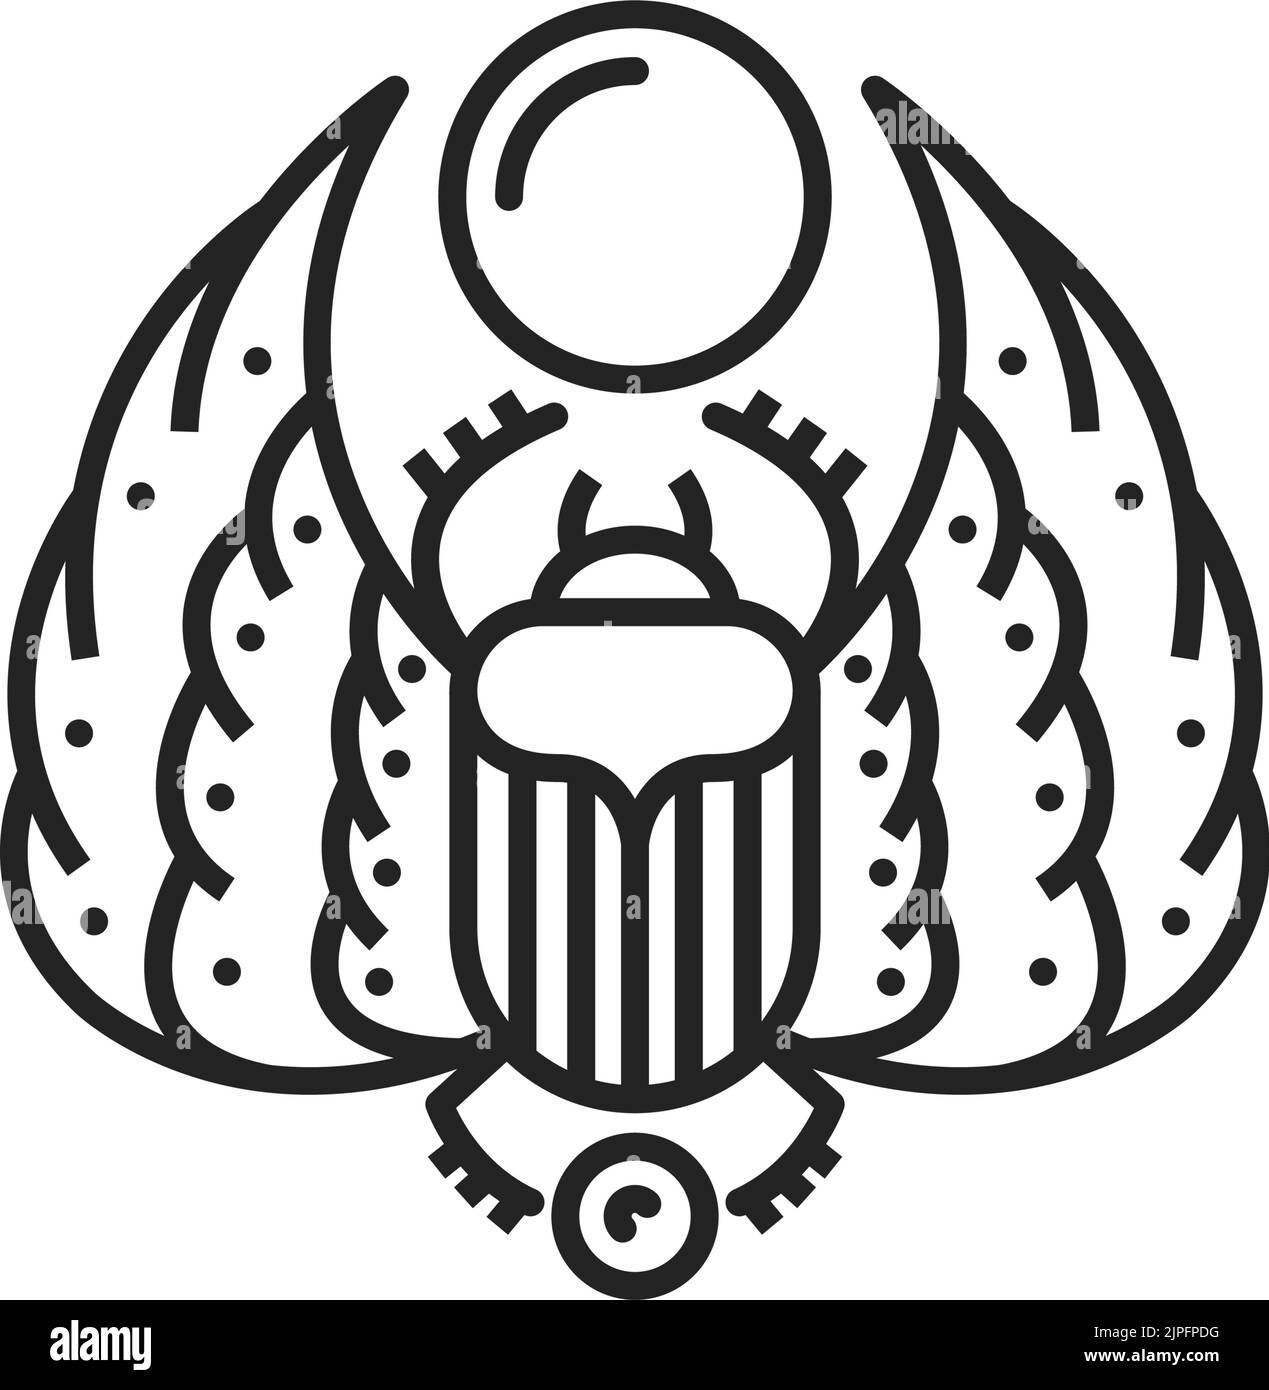 Scarab ancien symbole égyptien, icône vectorielle isolée. Signe sacré de la culture de l'antiquie en Égypte, scarabaeus ailé monochrome Illustration de Vecteur